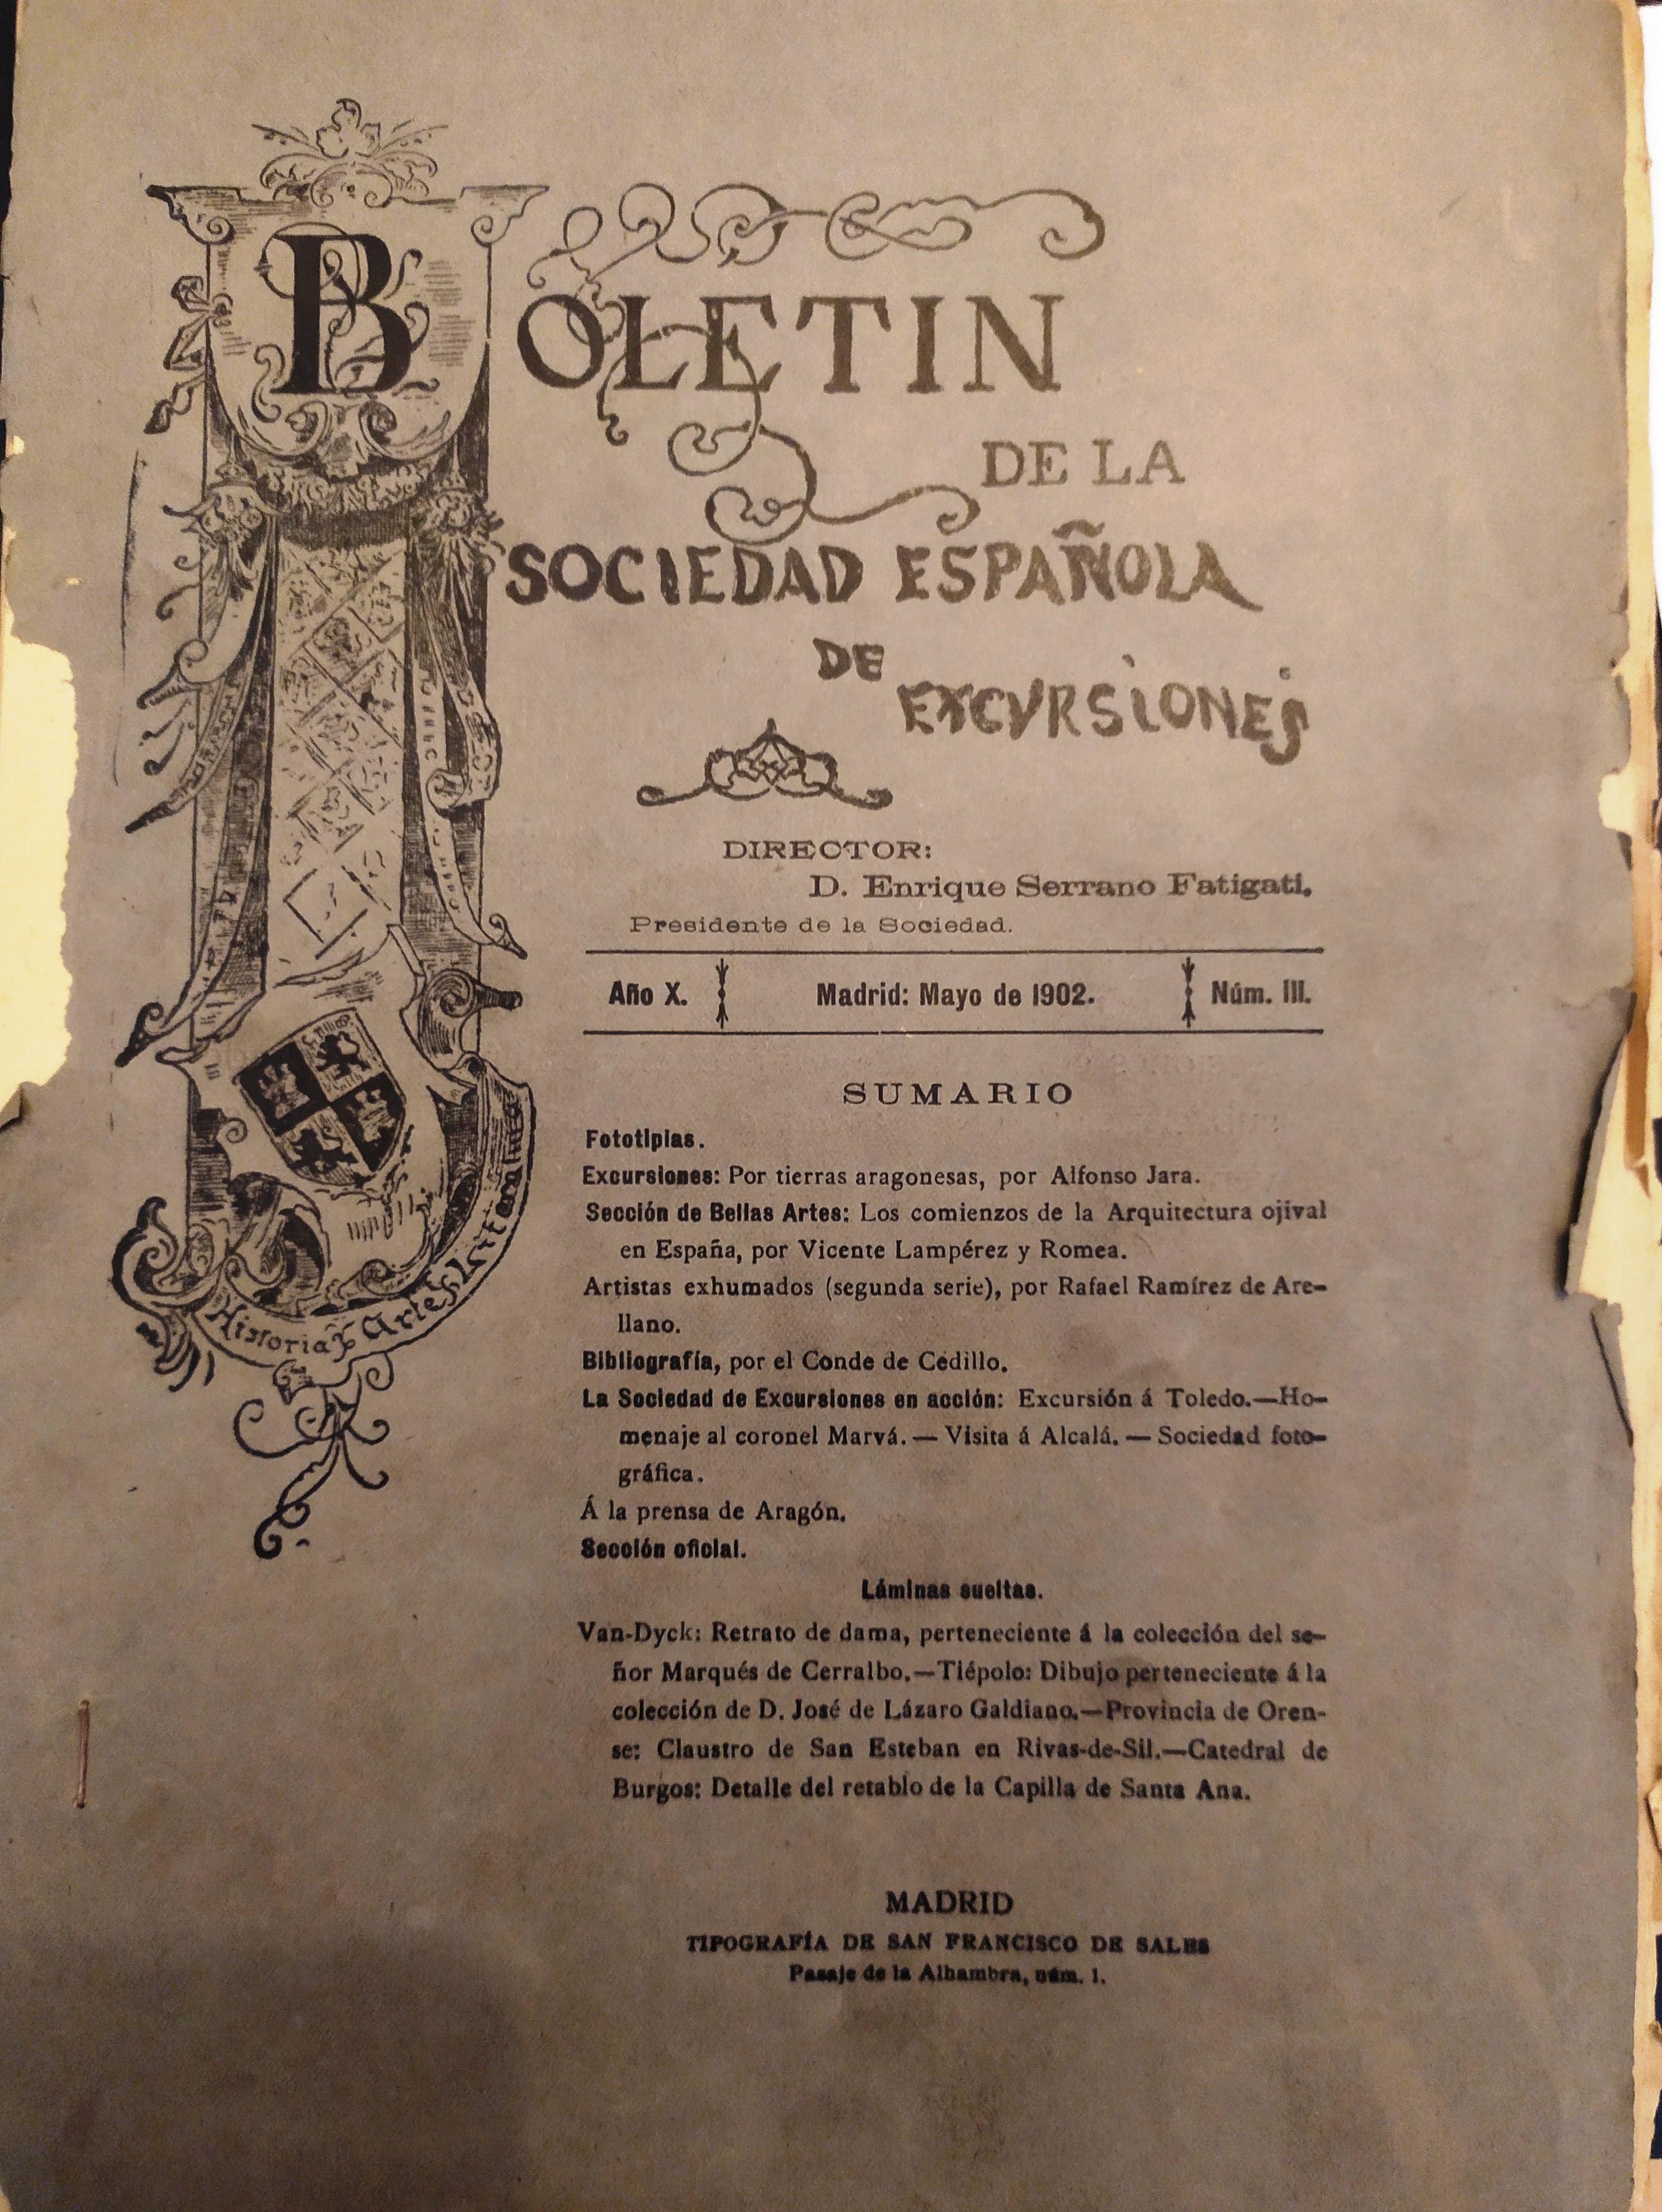 Noticia sobre "Visita a Alcalá", Sociedad Española de Excursiones, 1902